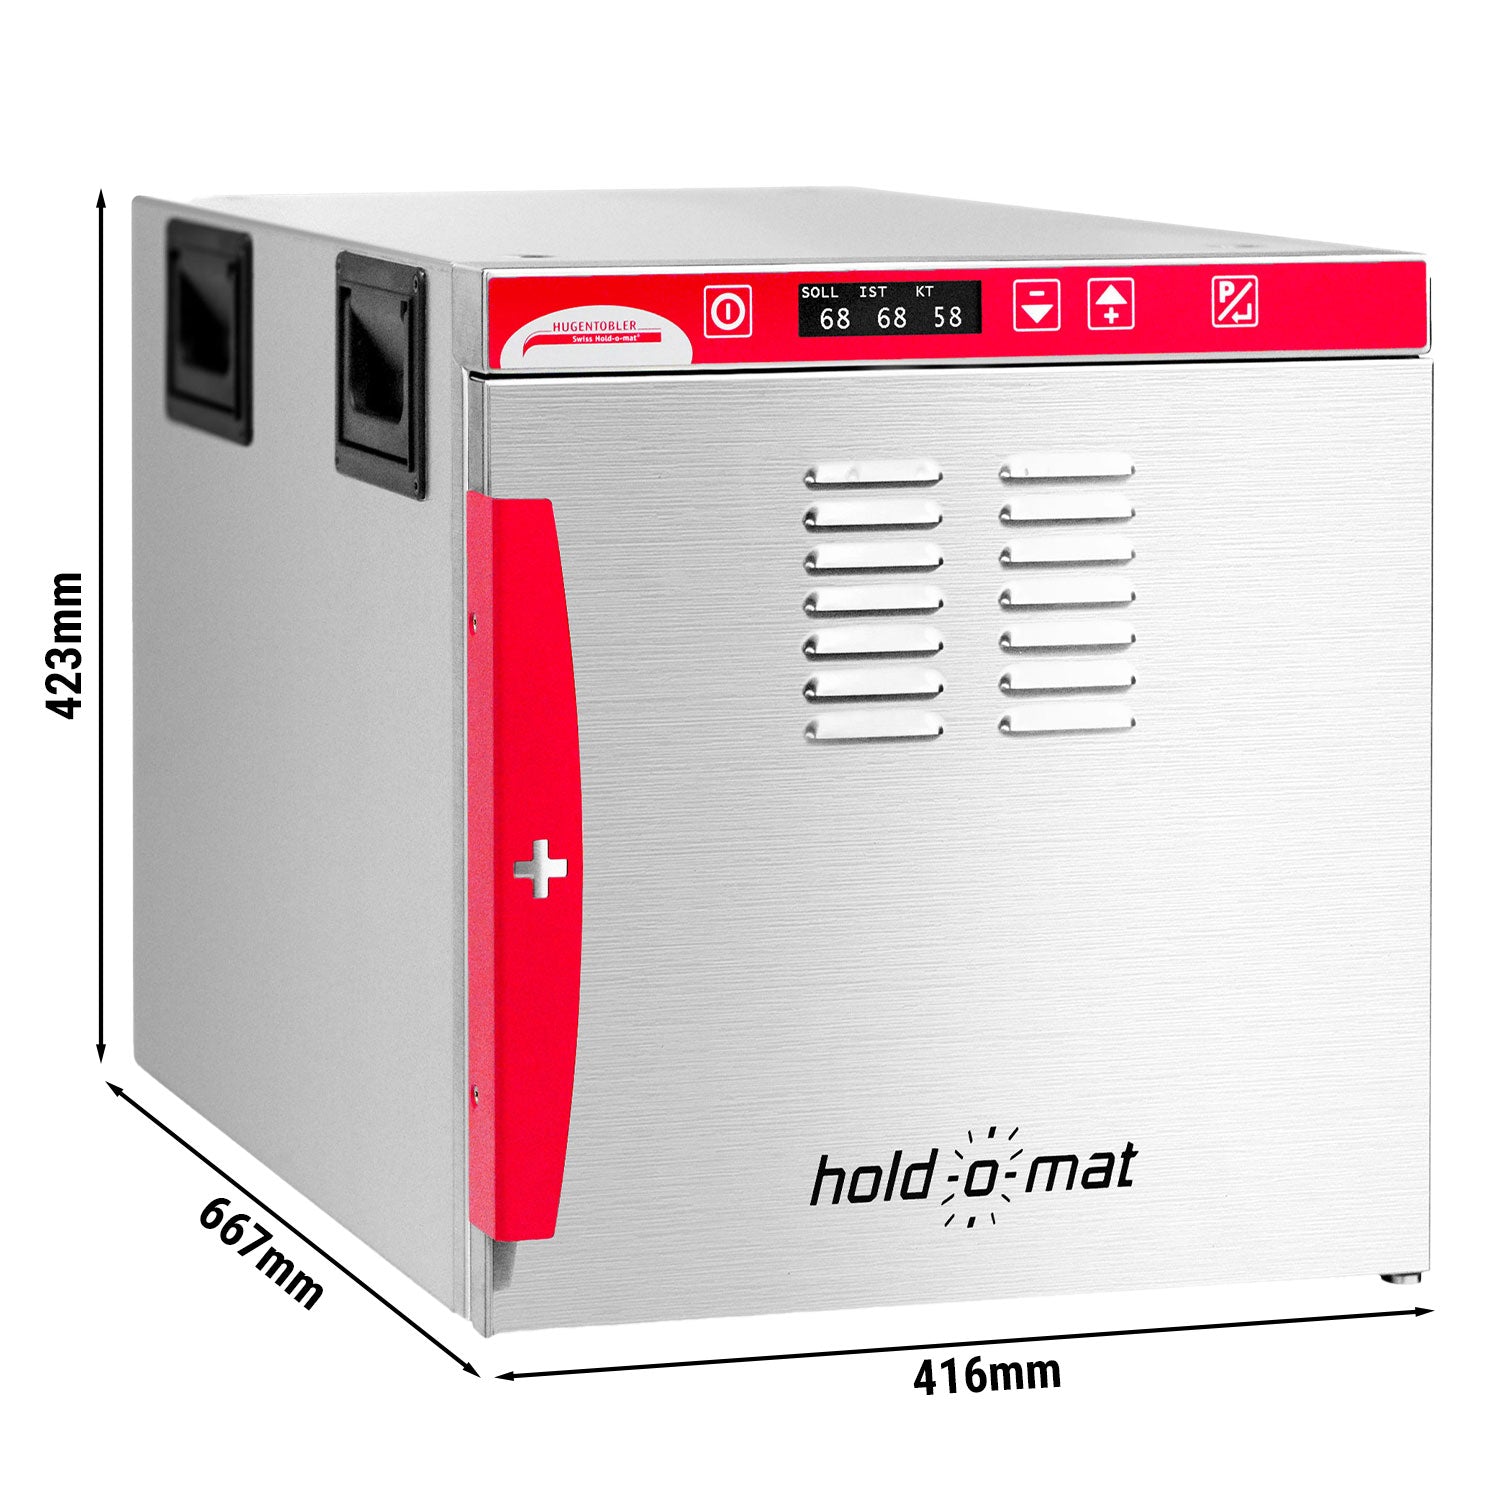 HUGENTOBLER | Hold-O-Mat 411 - Lav koge- og varmeenhed